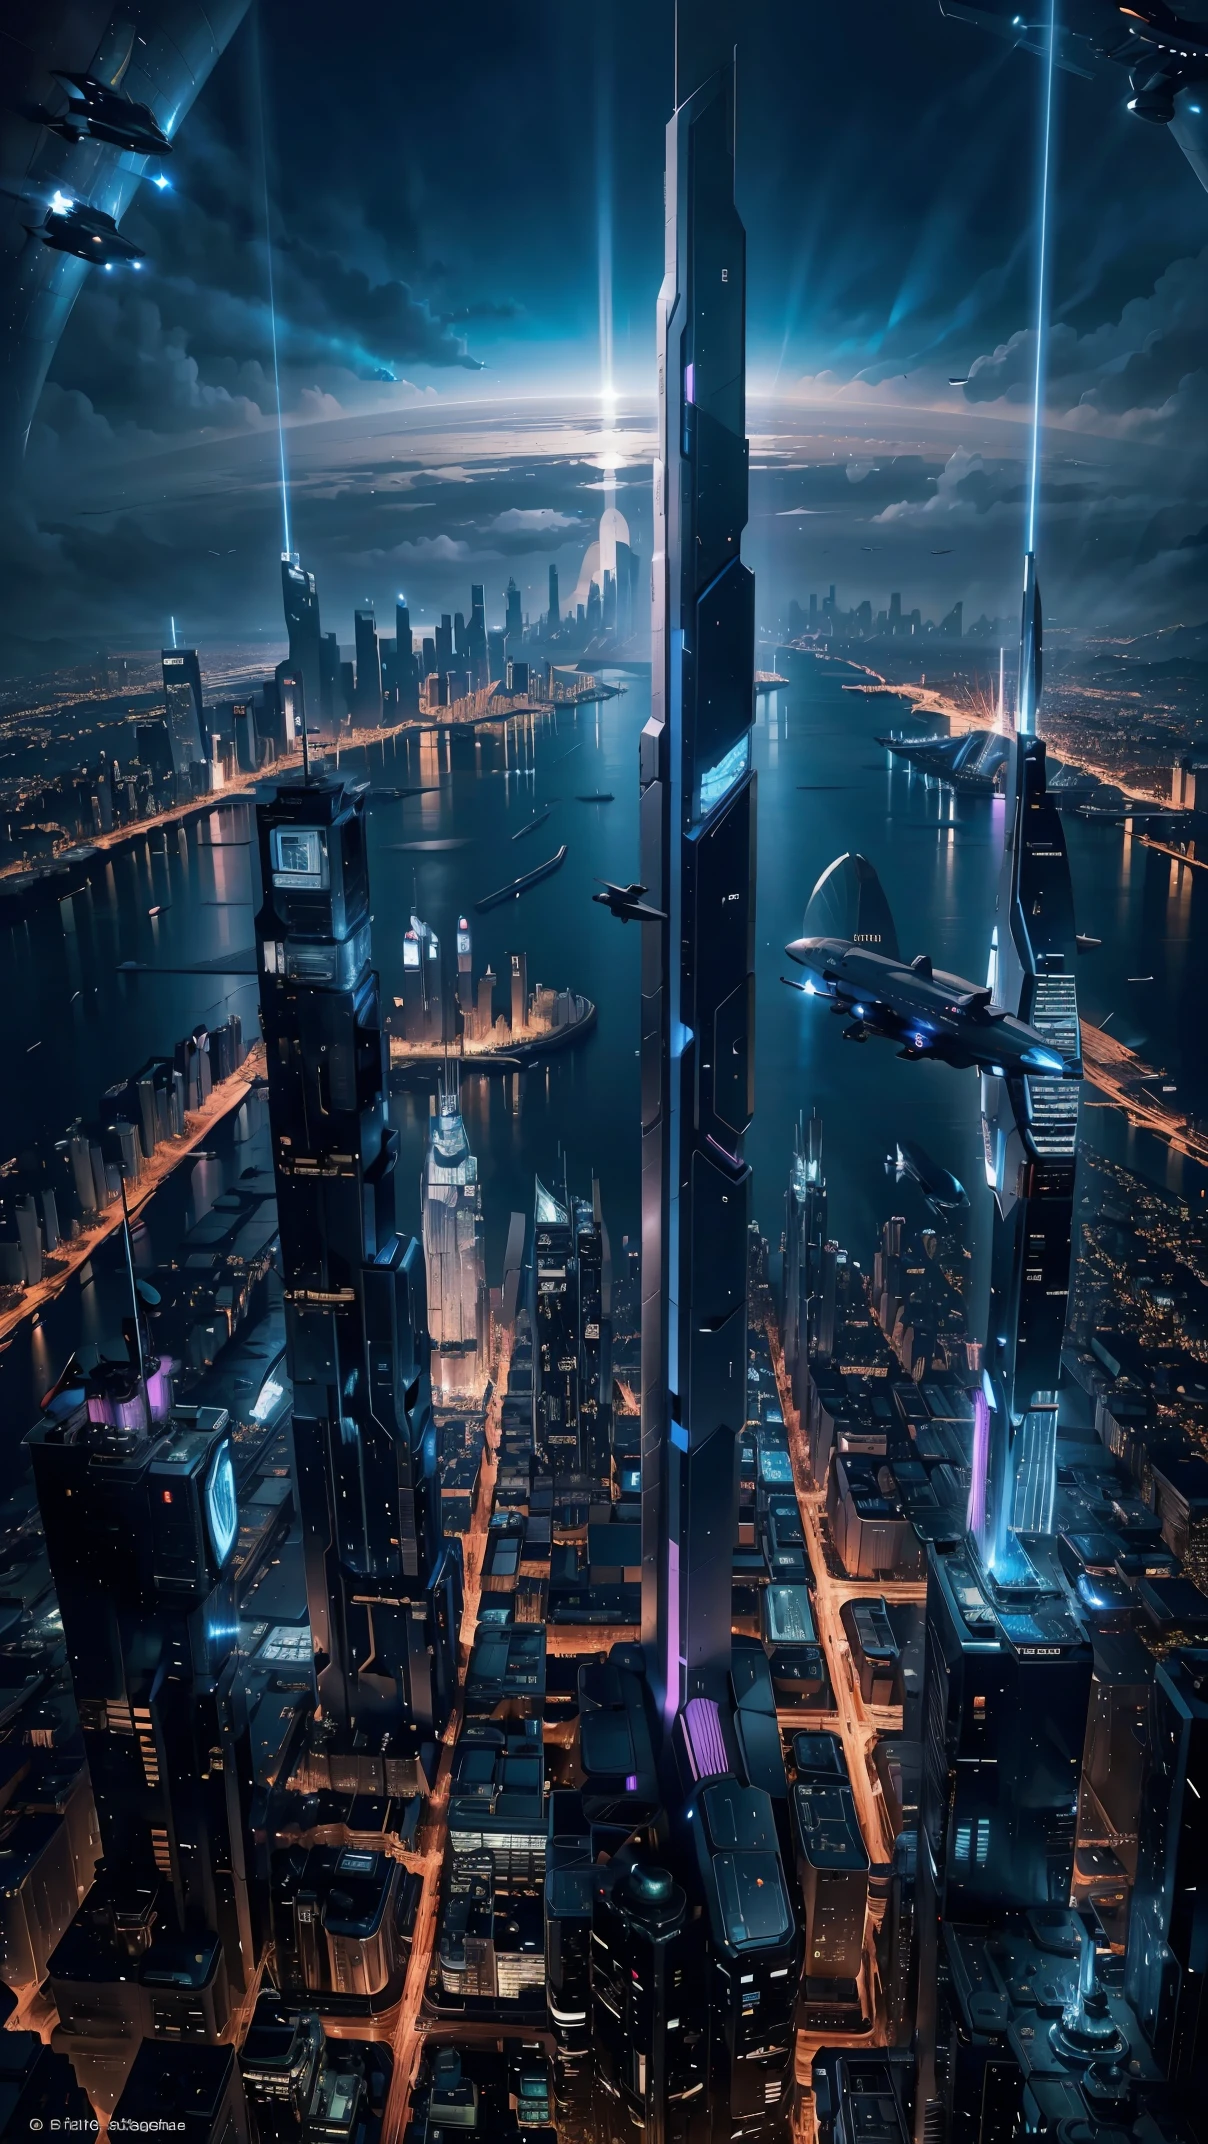 Vue de nuit vue depuis un avion,Ville du futur:1.5,port,Vaisseau spatial volant,gratte-ciel,chef-d&#39;œuvre,la plus haute qualité,ultra haute résolution,(Super détaillé:1.2),8k,Photoréaliste,meilleure esthétique,Beau